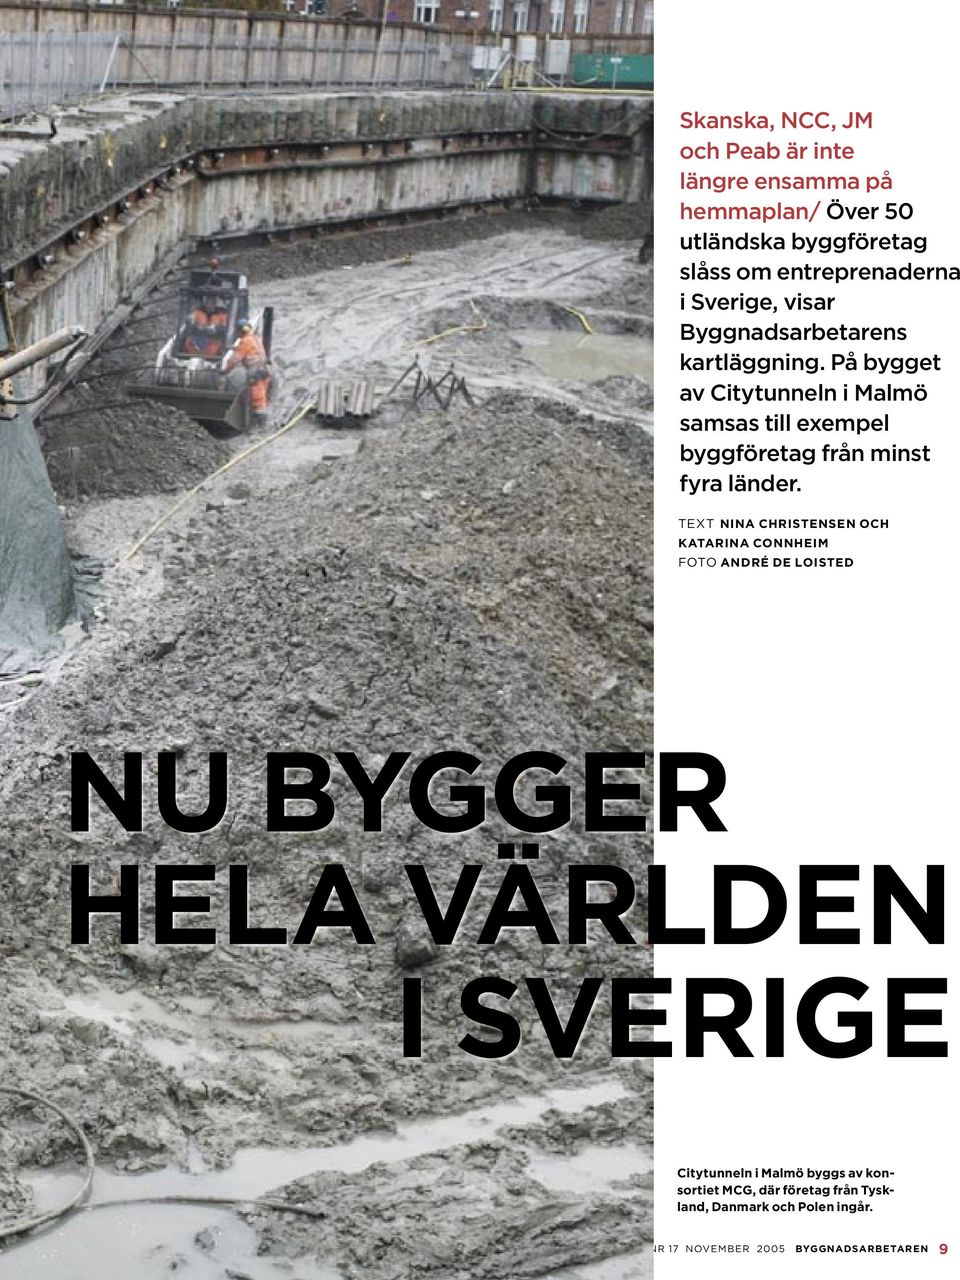 På bygget av Citytunneln i Malmö samsas till exempel byggföretag från minst fyra länder.